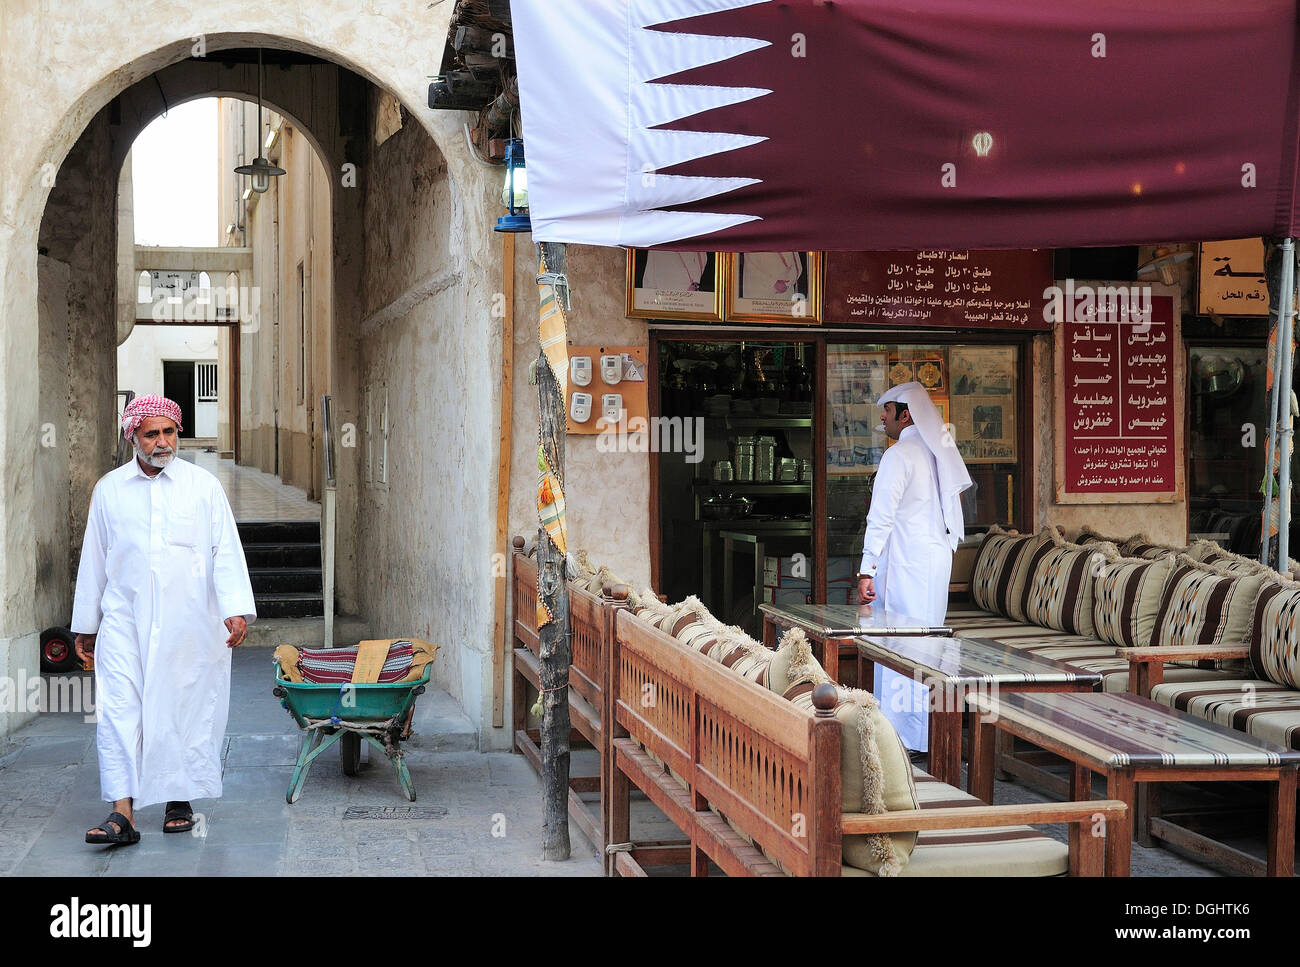 Photos at Blackout Coffee Doha - Coffee Shop in الدفنة القصار